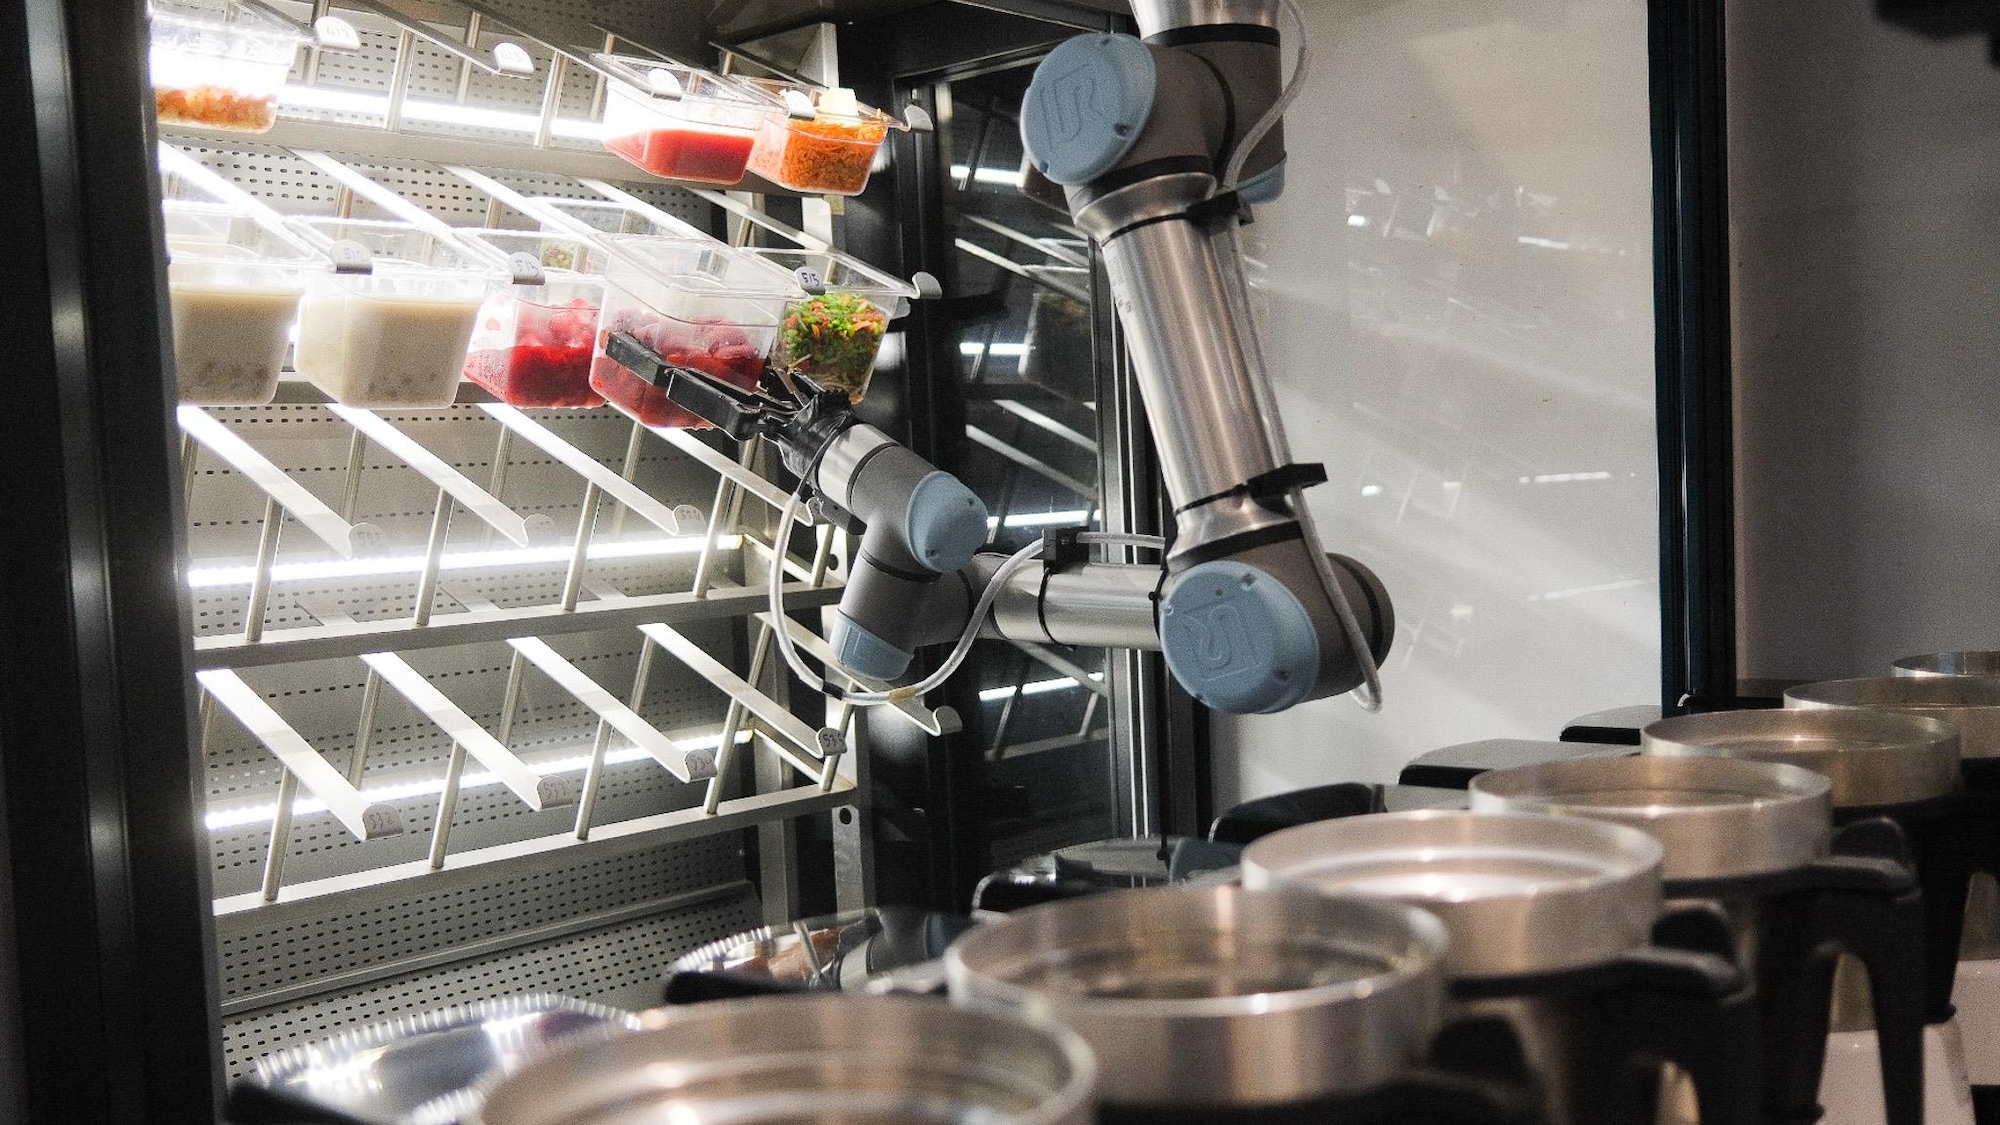 Un robot prend des bacs plein d'aliments dans une cuisine.